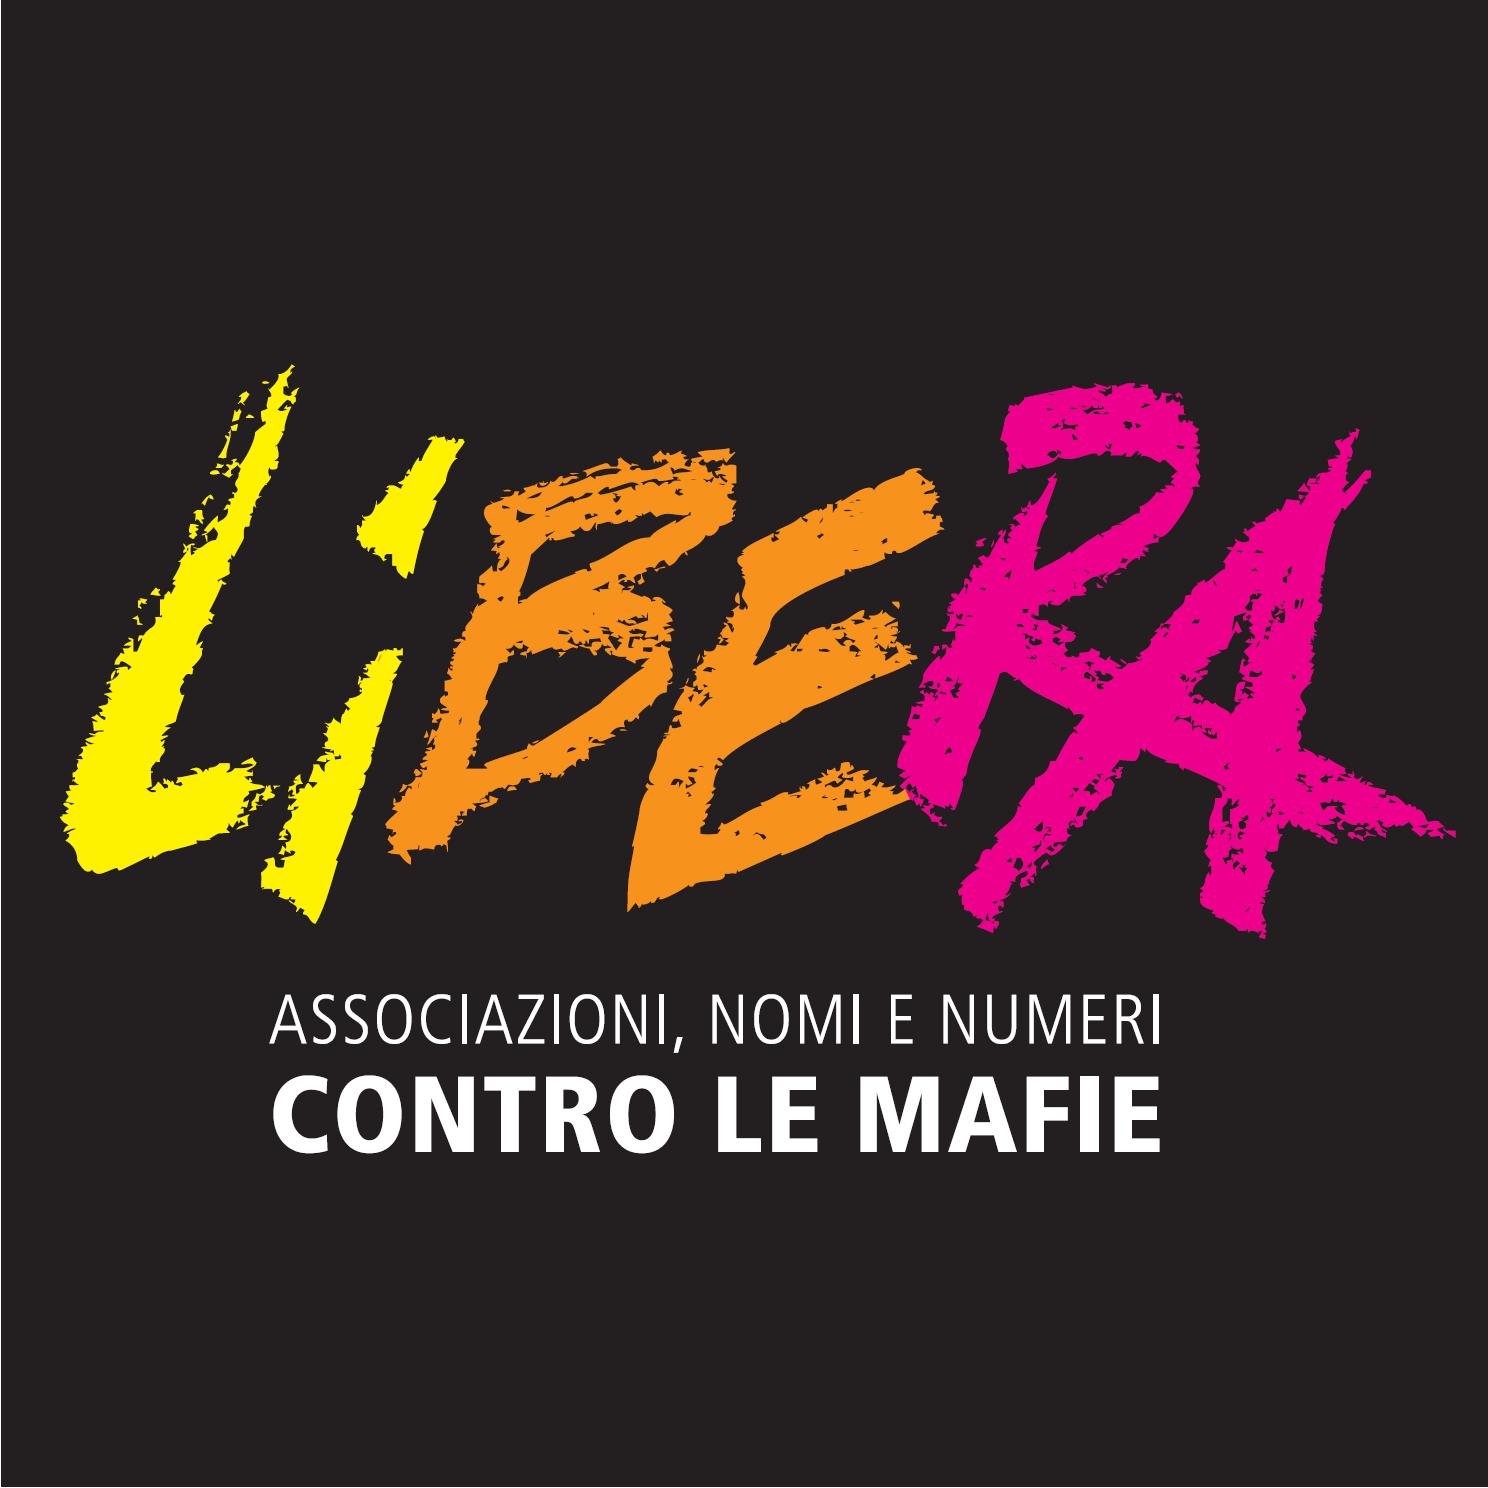  Domani a Battipaglia la festa della rete di Libera in Provincia di Salerno